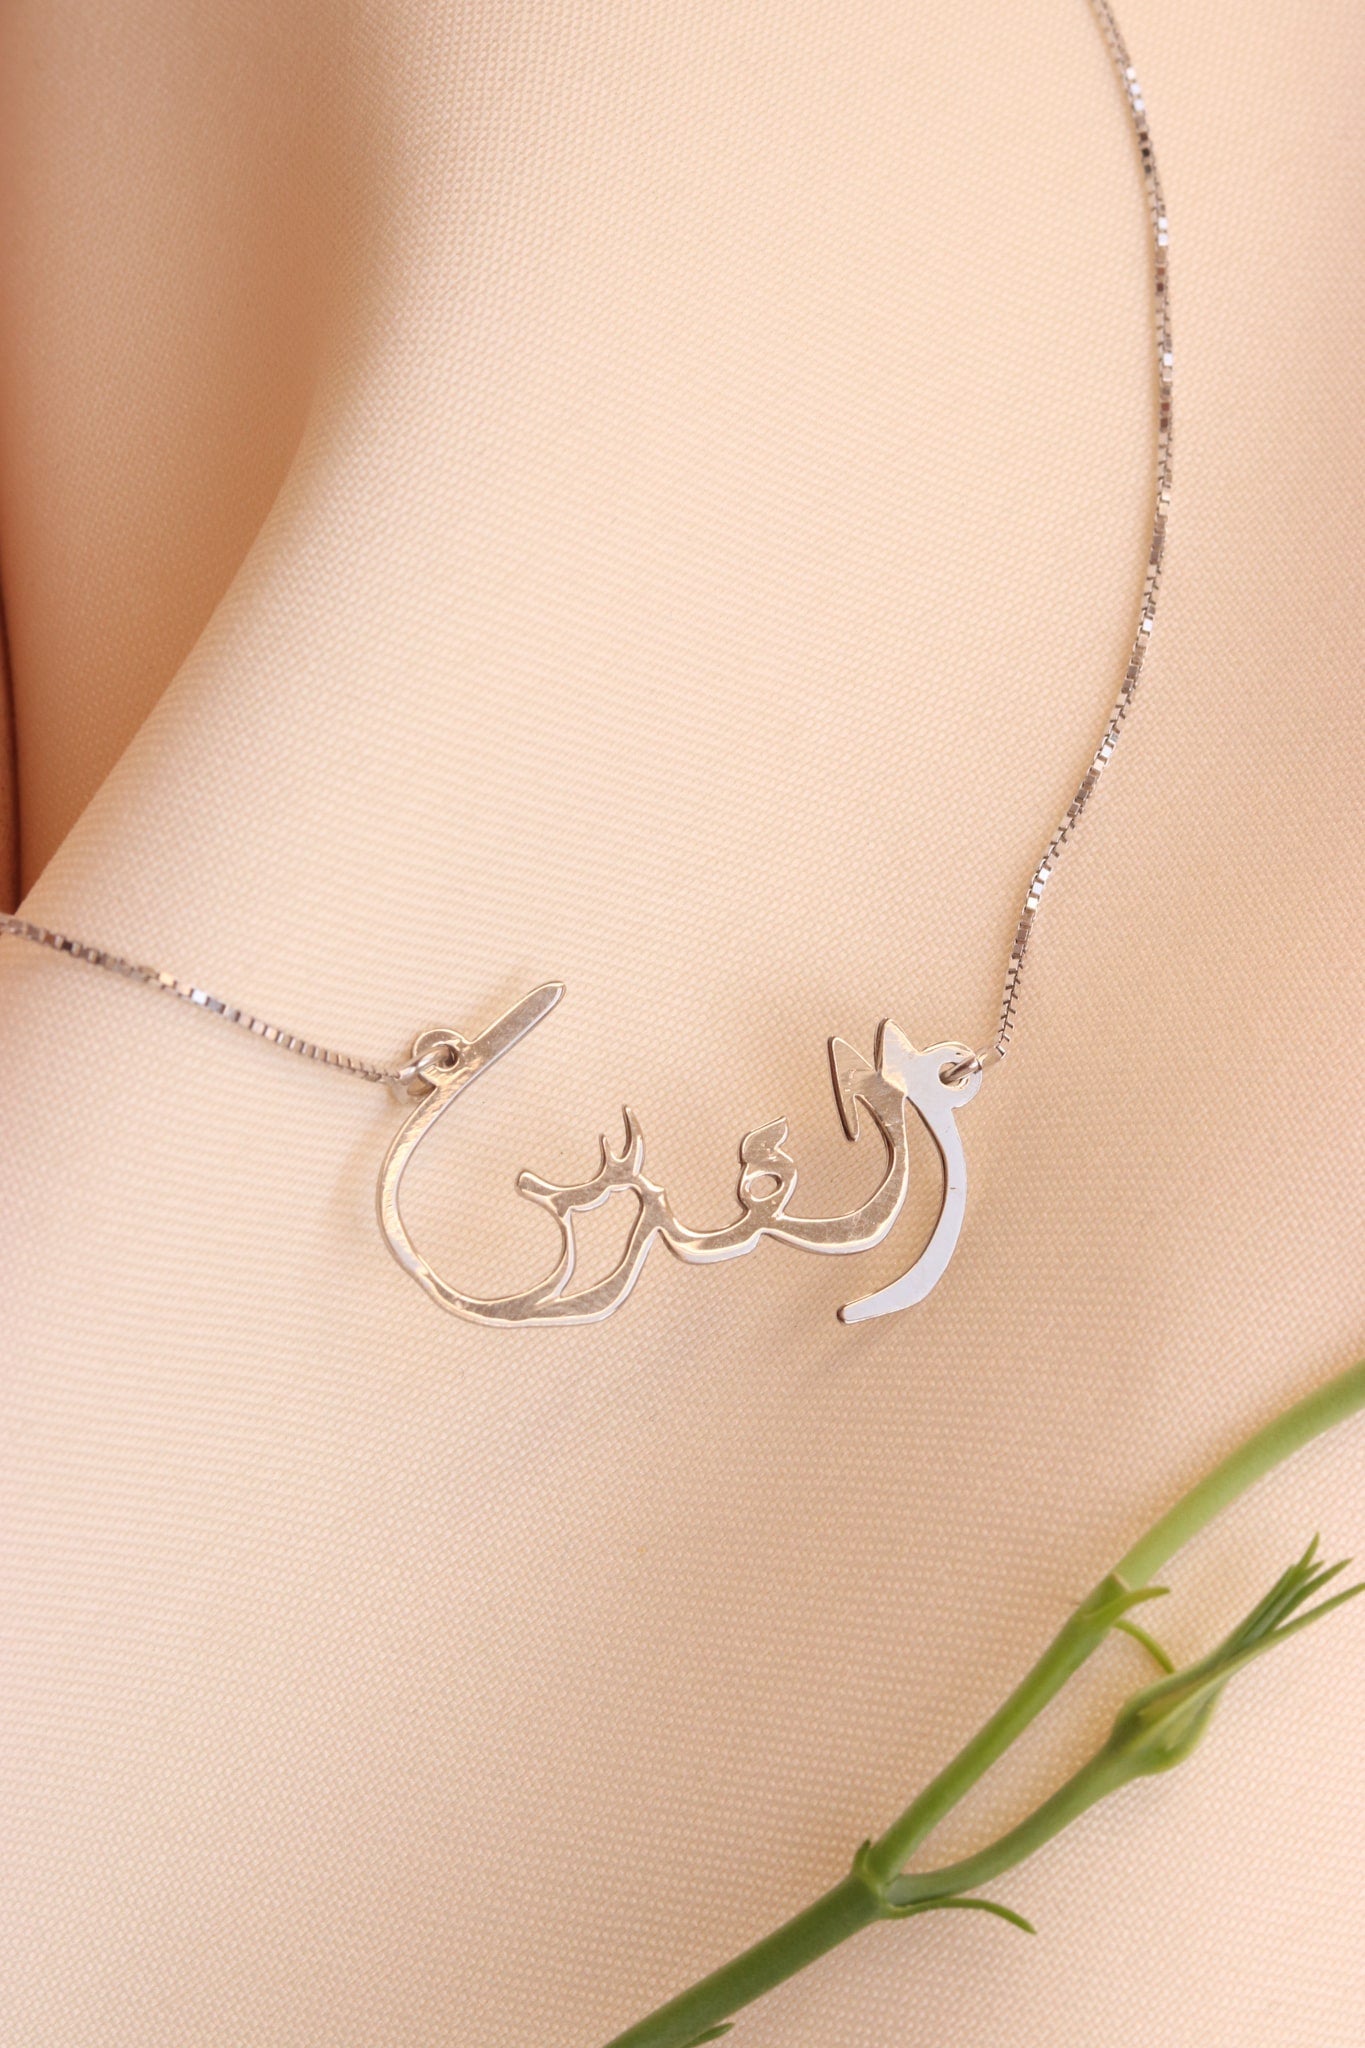 Jerusalem word in Arabic necklace